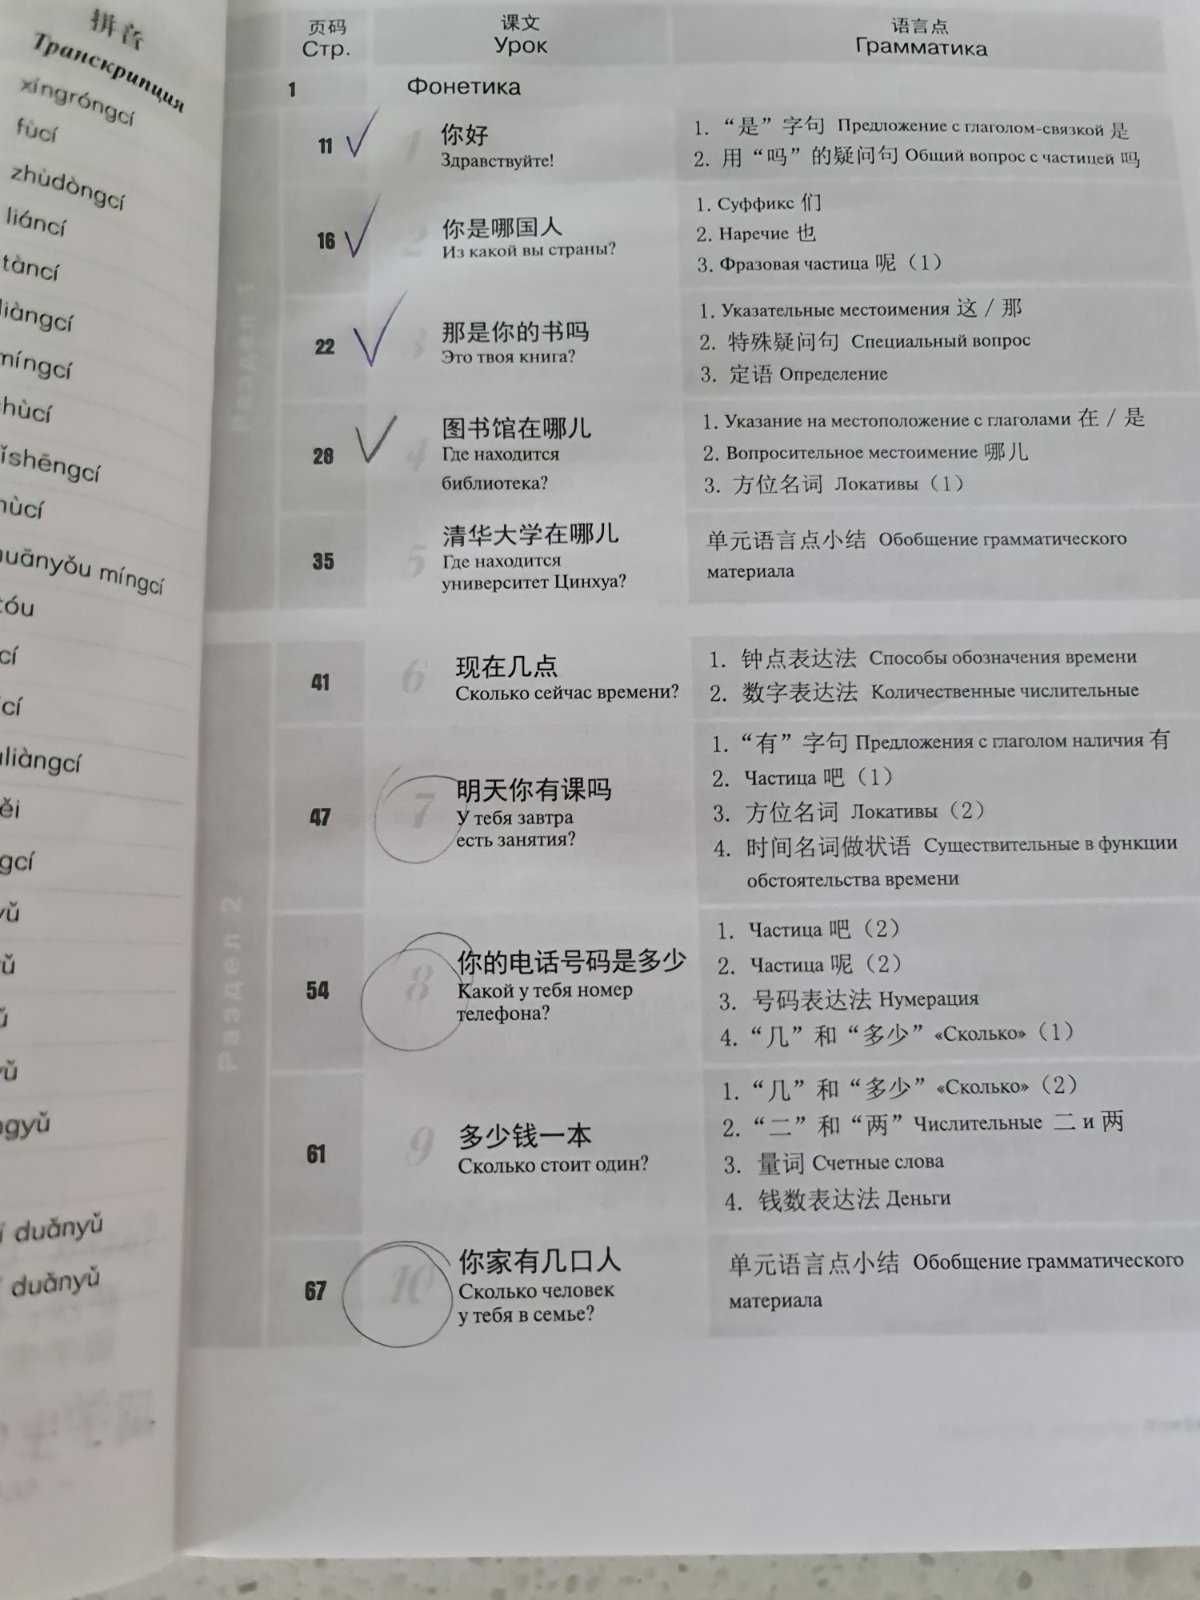 BOYA CHINESE  Бойя  підручник  ступень 1 китайська/китайский  мова